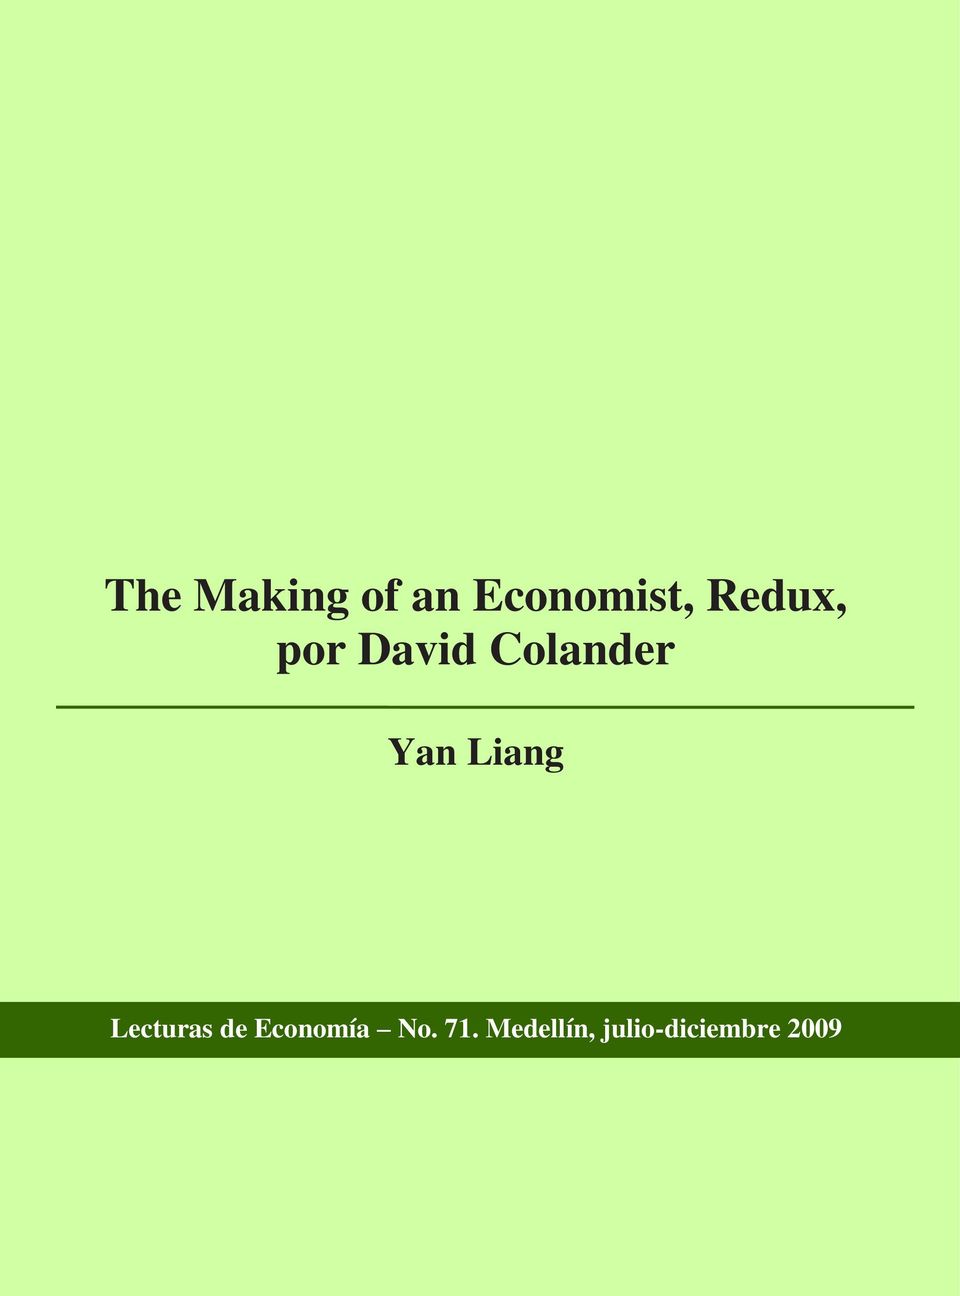 Liang Lecturas de Economía No.